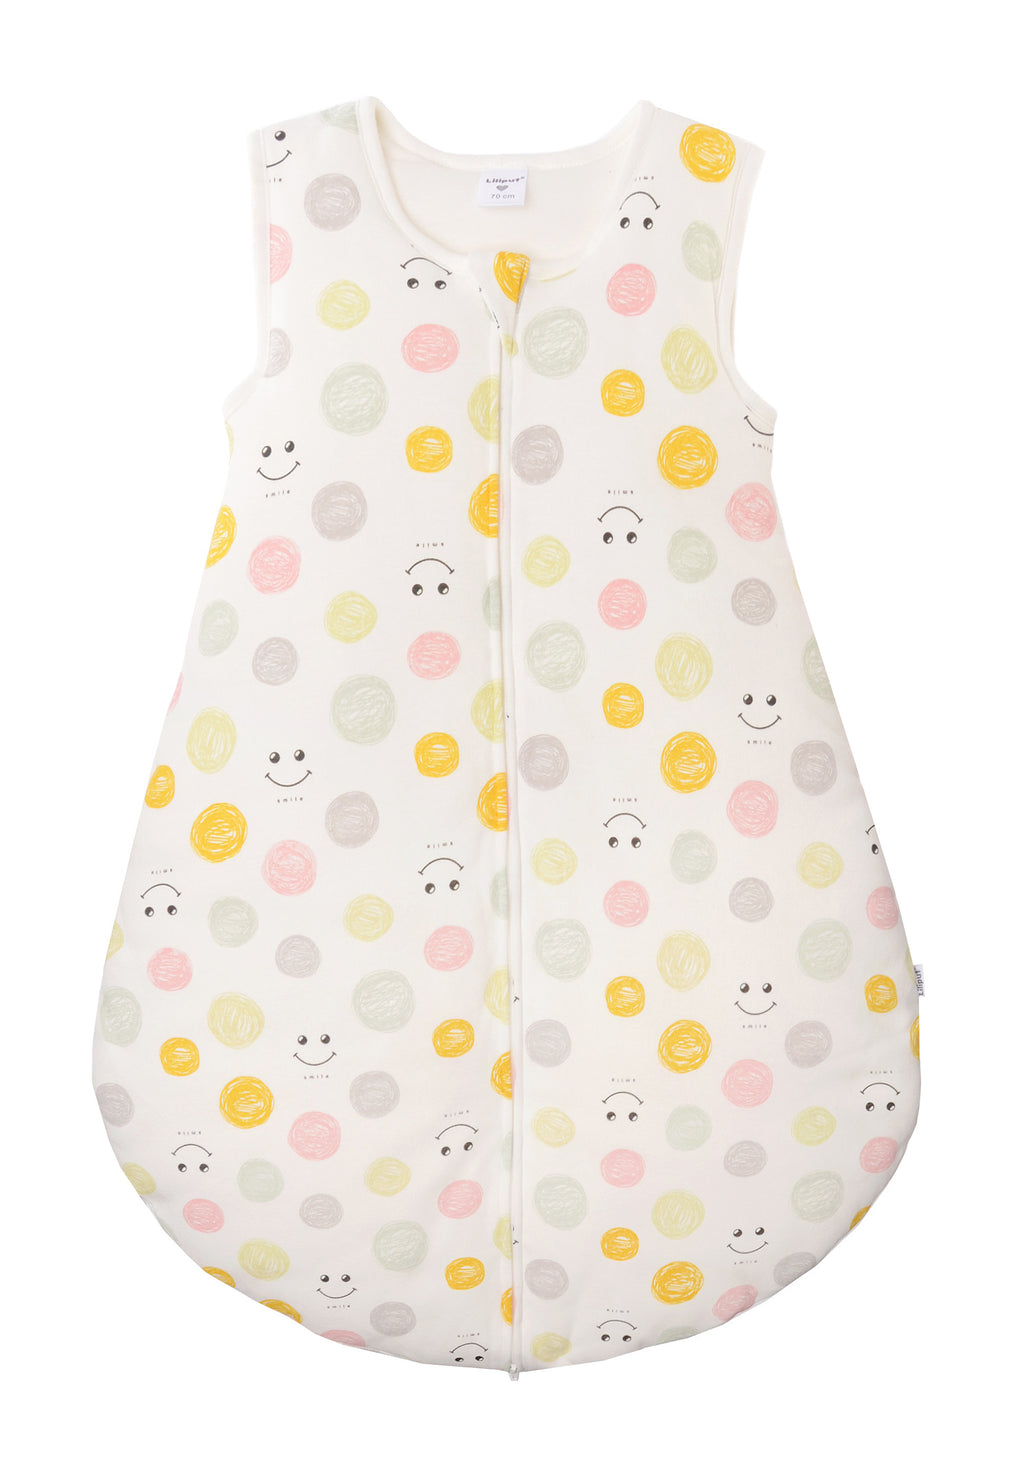 Schlafsack für Babys in unterschiedlichen Längen mit Knöpfen und Reißverschluss an der Seite. Design:  Allover Smiley